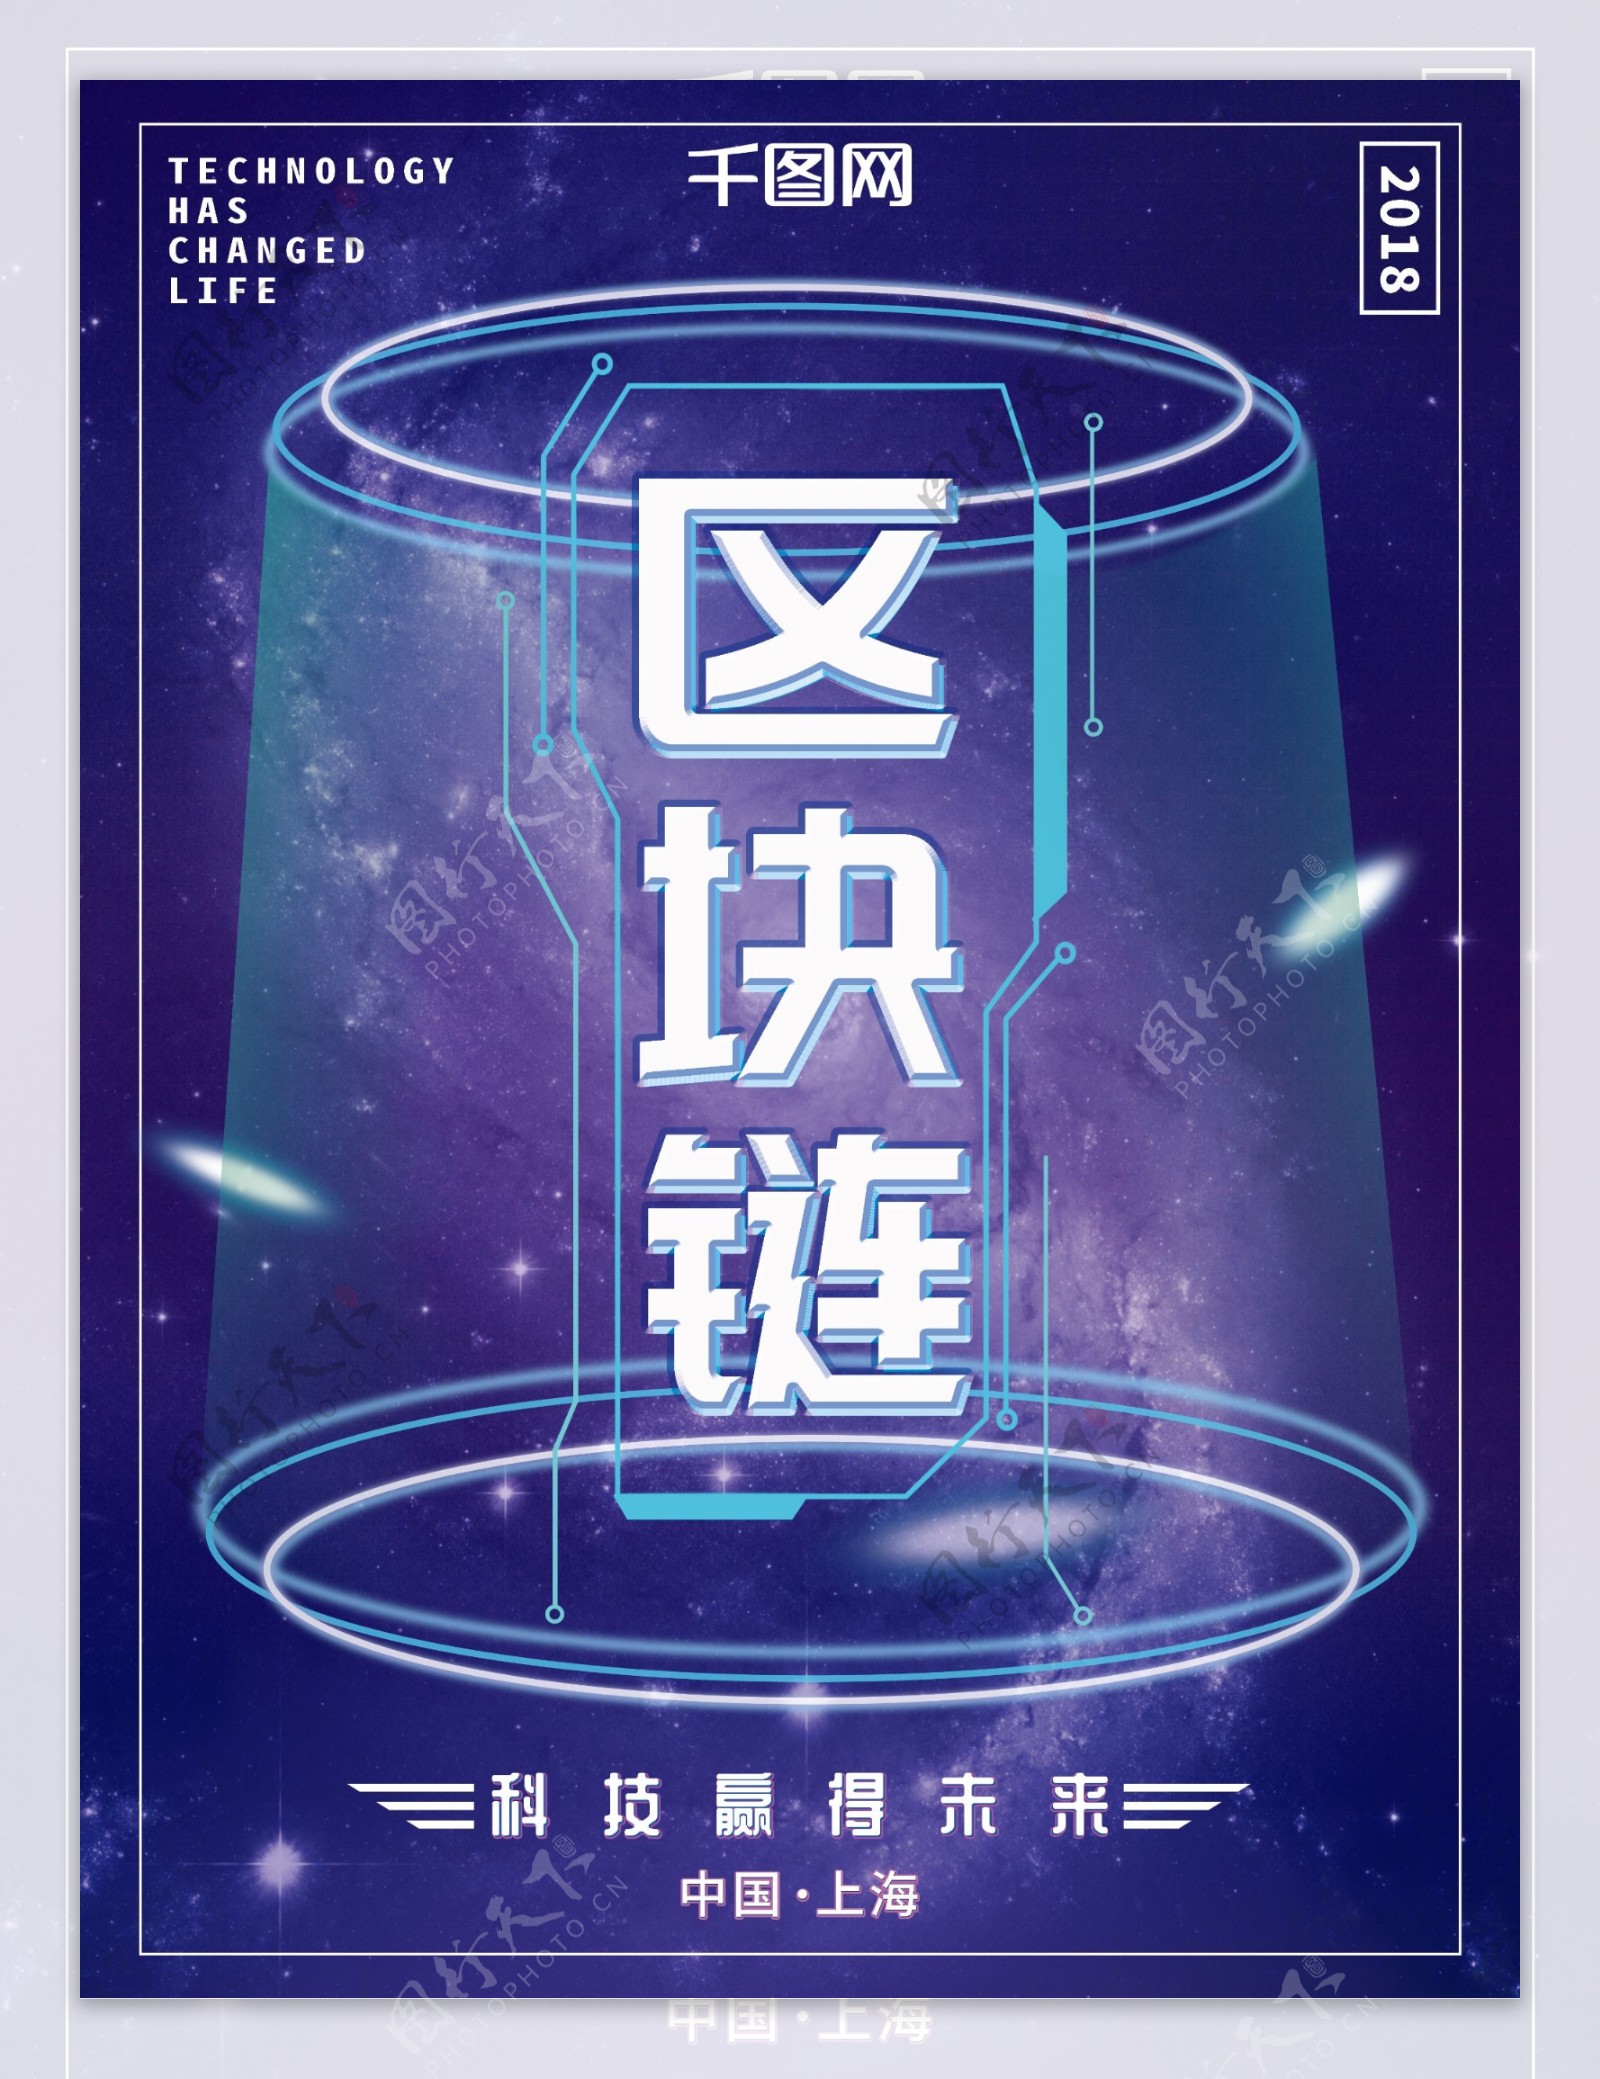 蓝紫色大气银河区块链科技商业企业海报